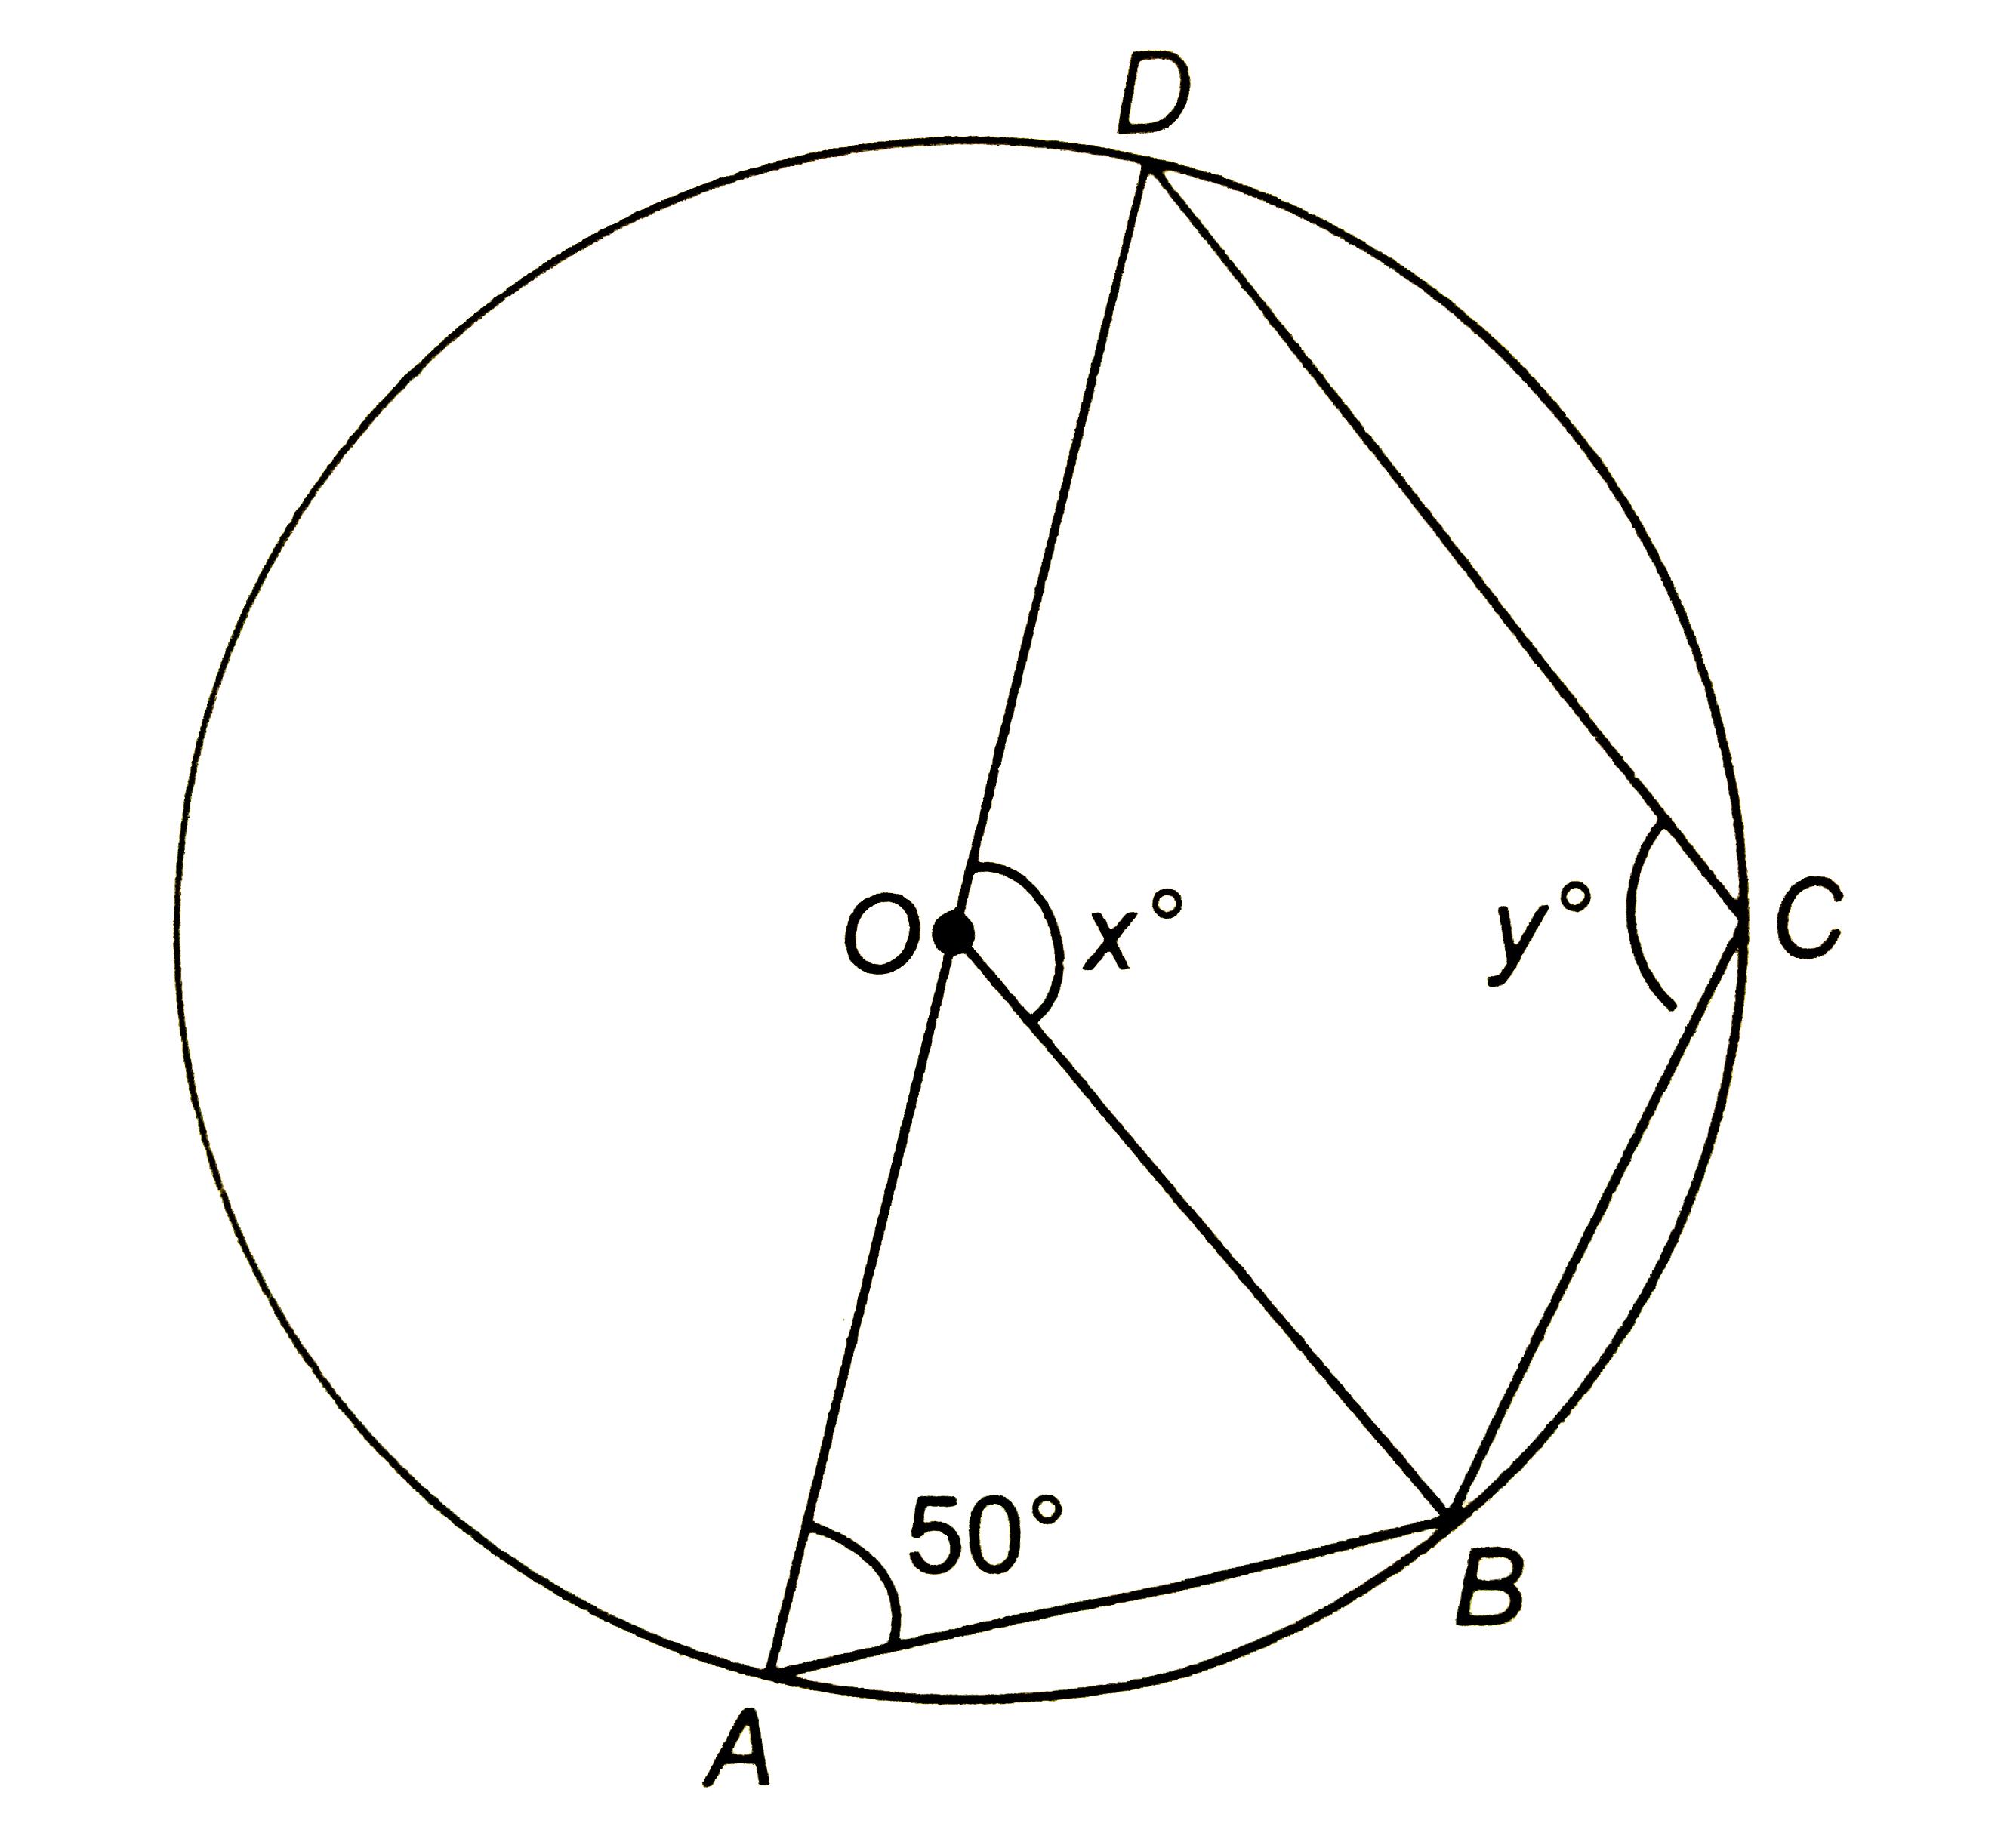 संग्लन चित्र में, O वृत्त का केन्द्र है | यदि angleDAB=50^(@), तो x और y के मान ज्ञात कीजिए |